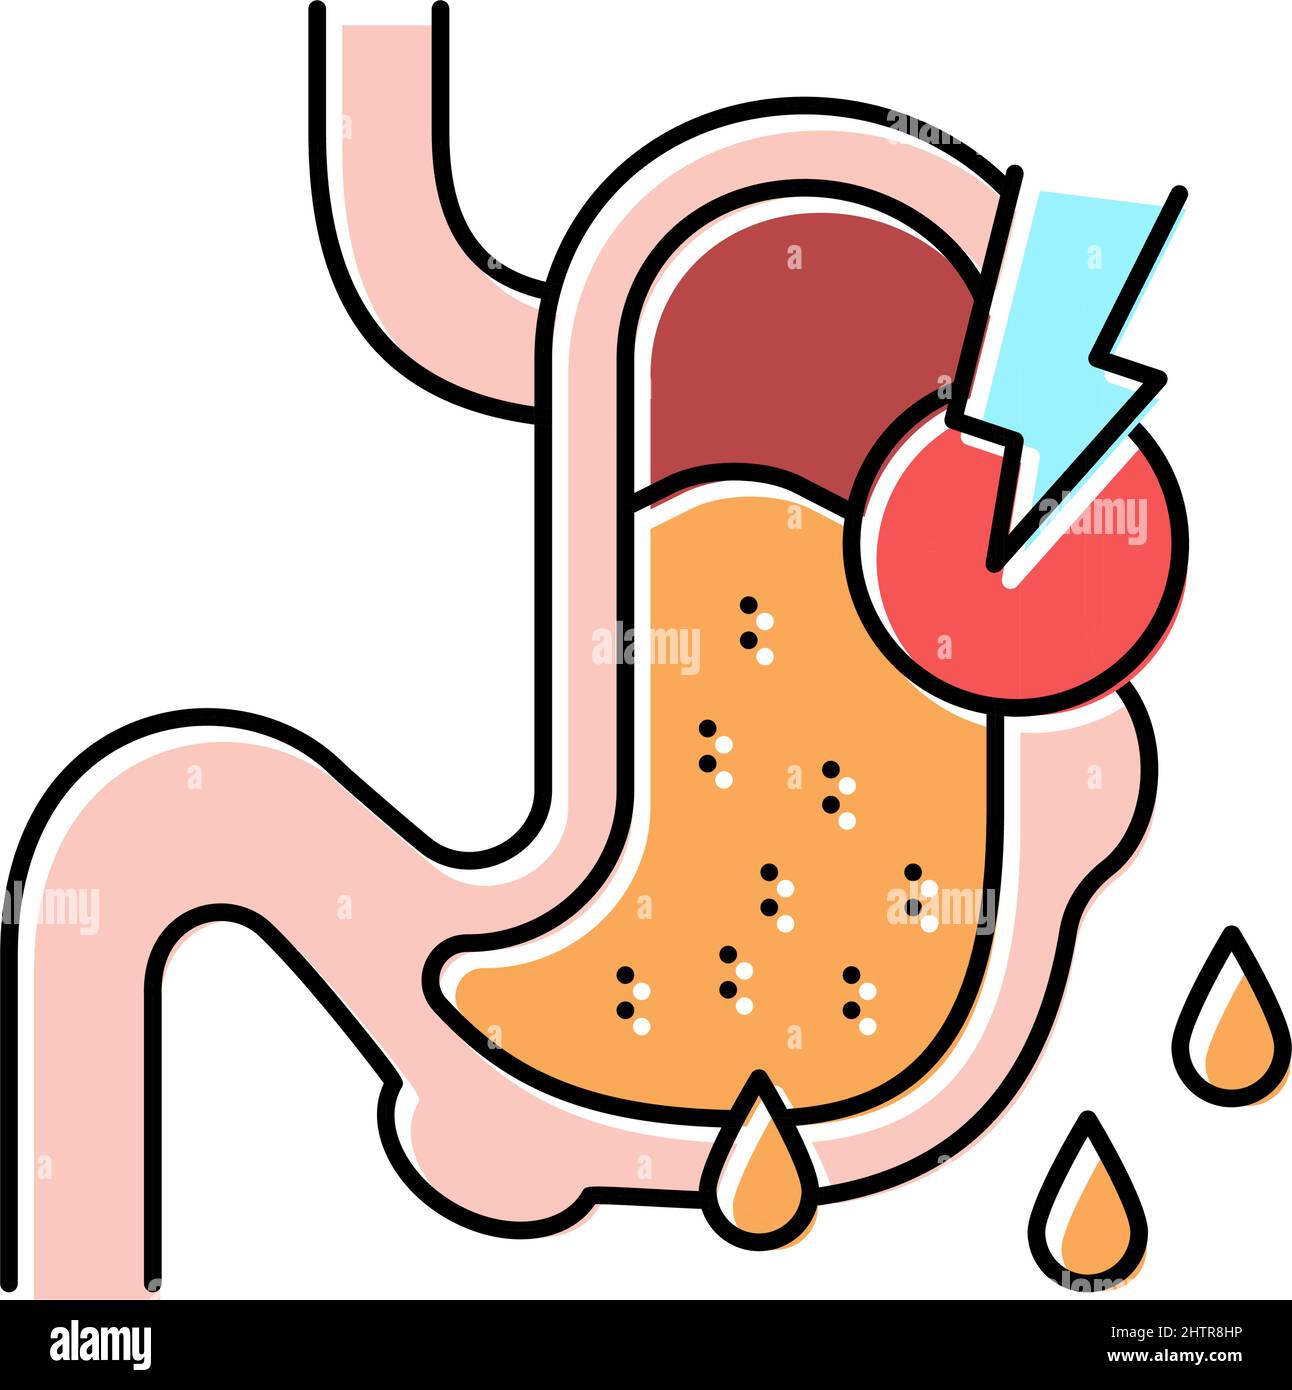 Lecks in der Darstellung der Farbsymbole des gastrointestinalen Systems Stock Vektor